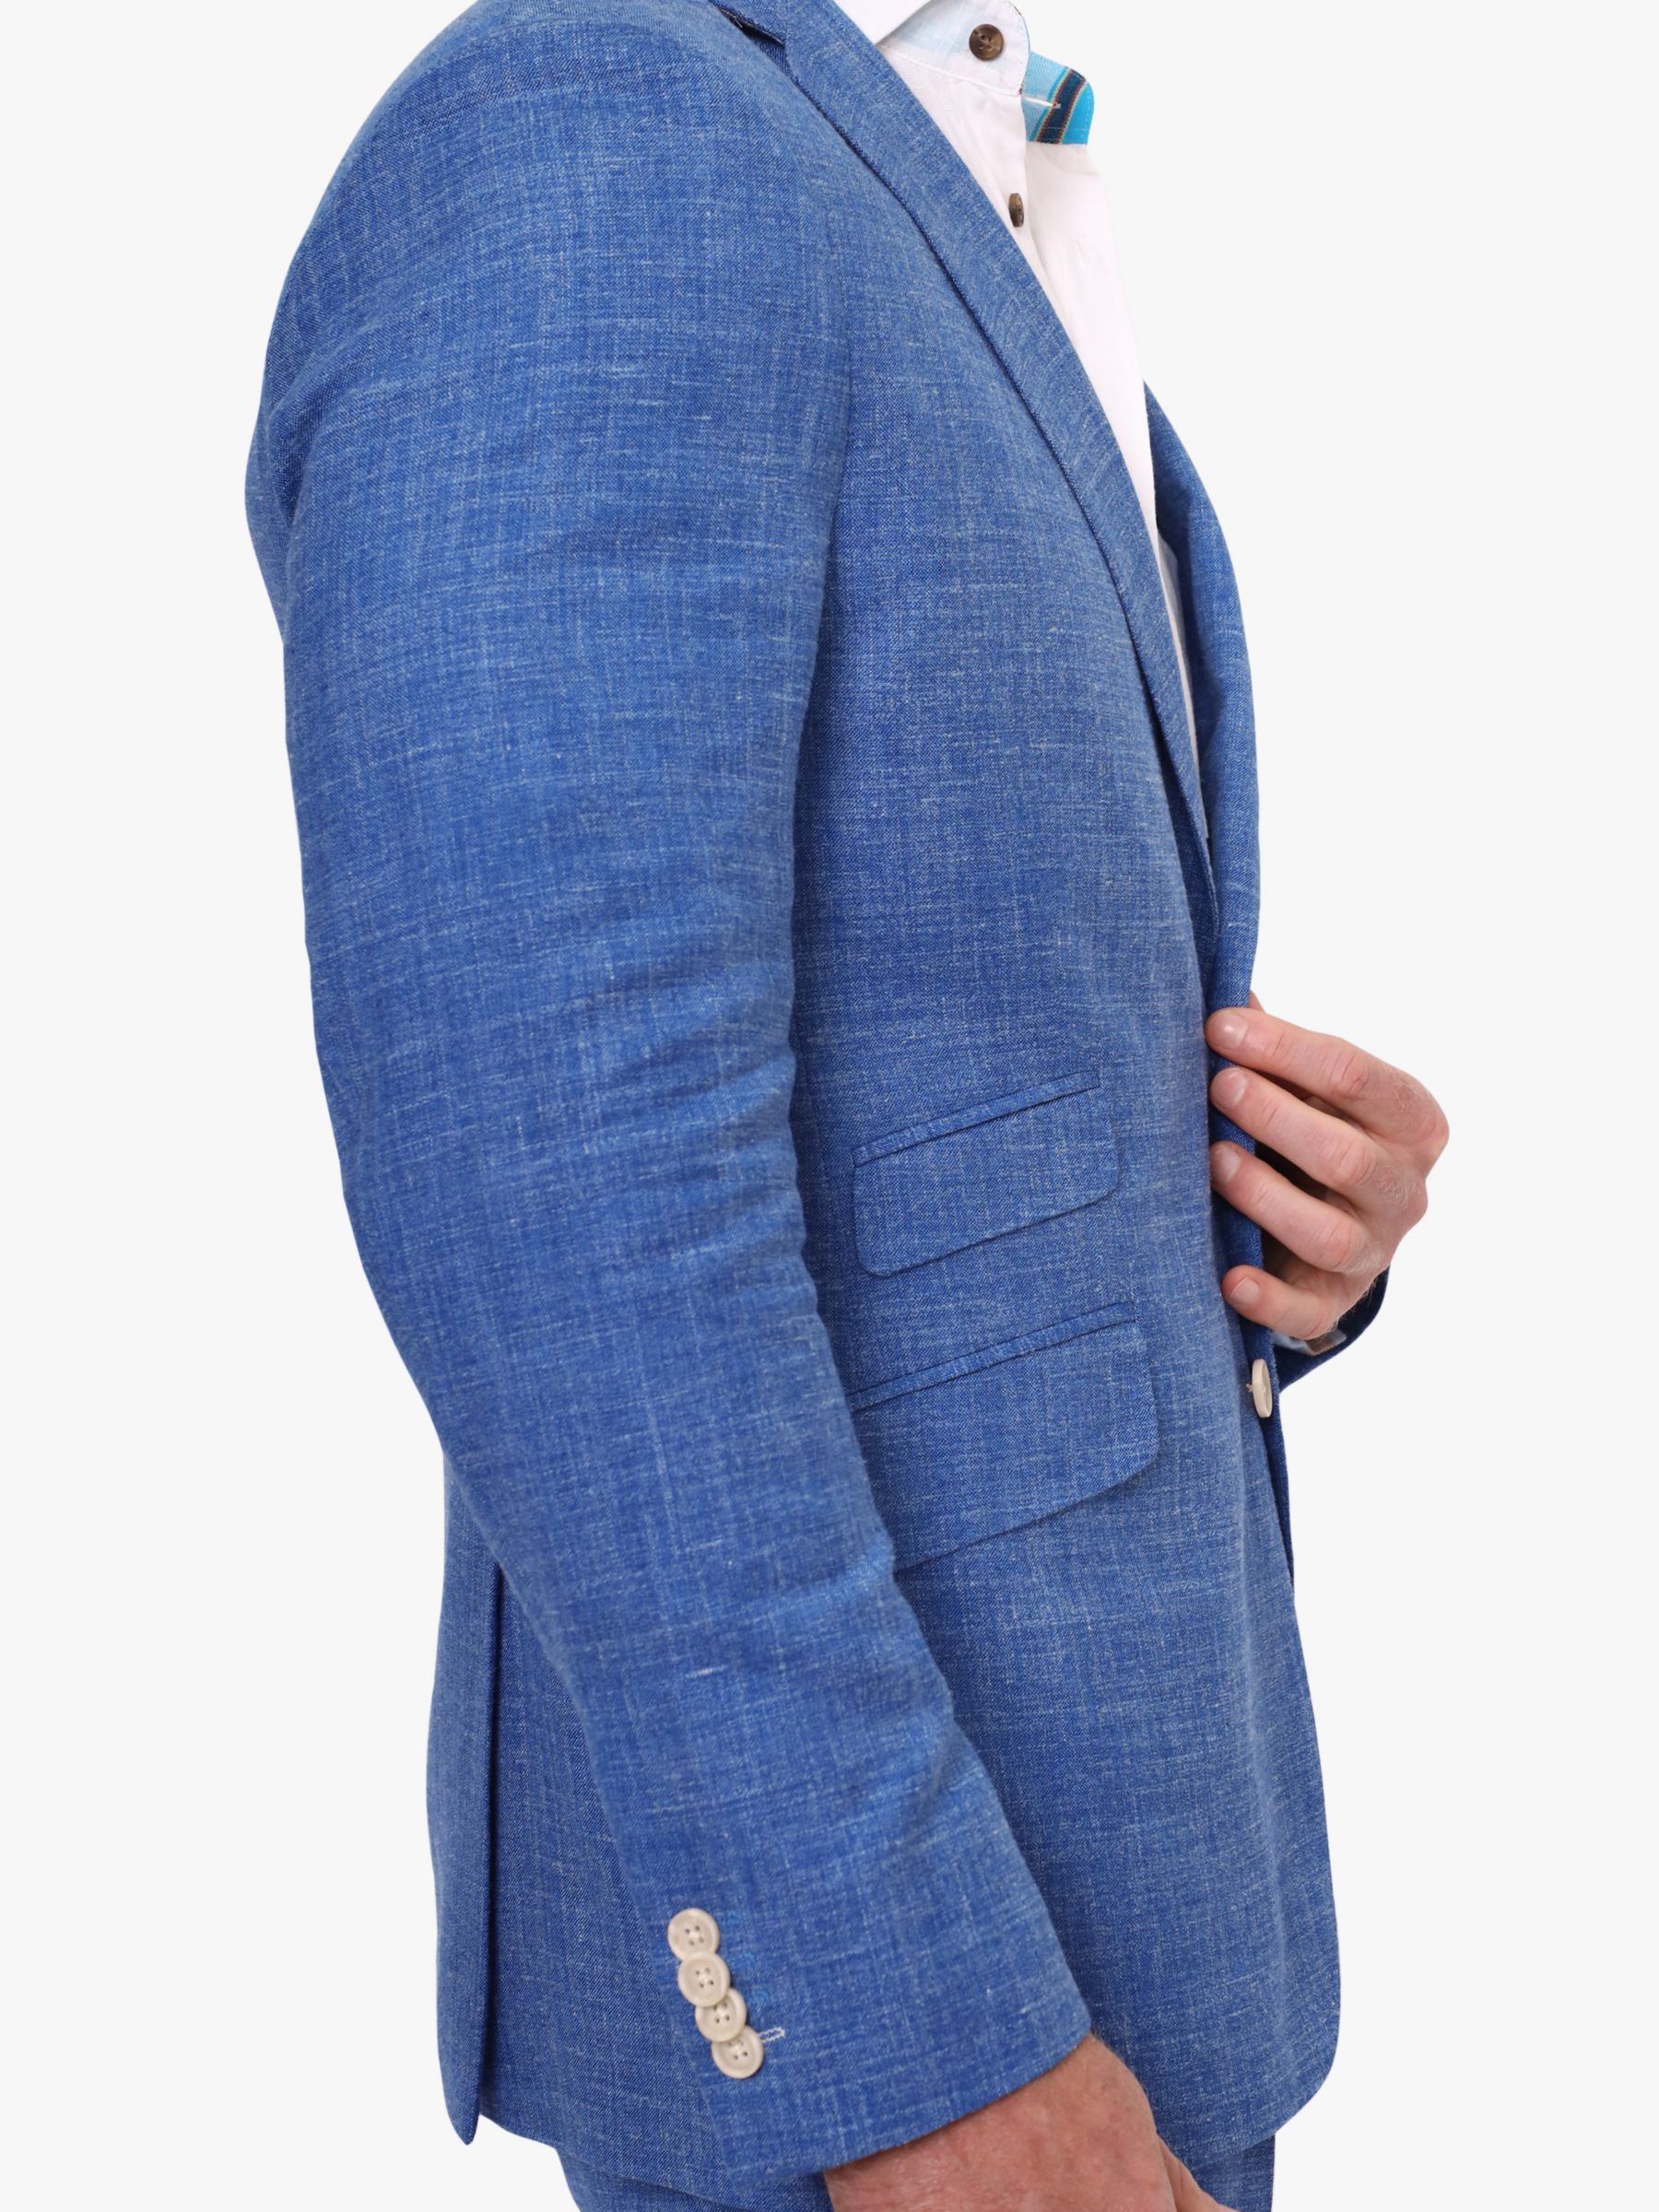 KOY Linen Blend Suit Jacket, Mid Blue, 48R